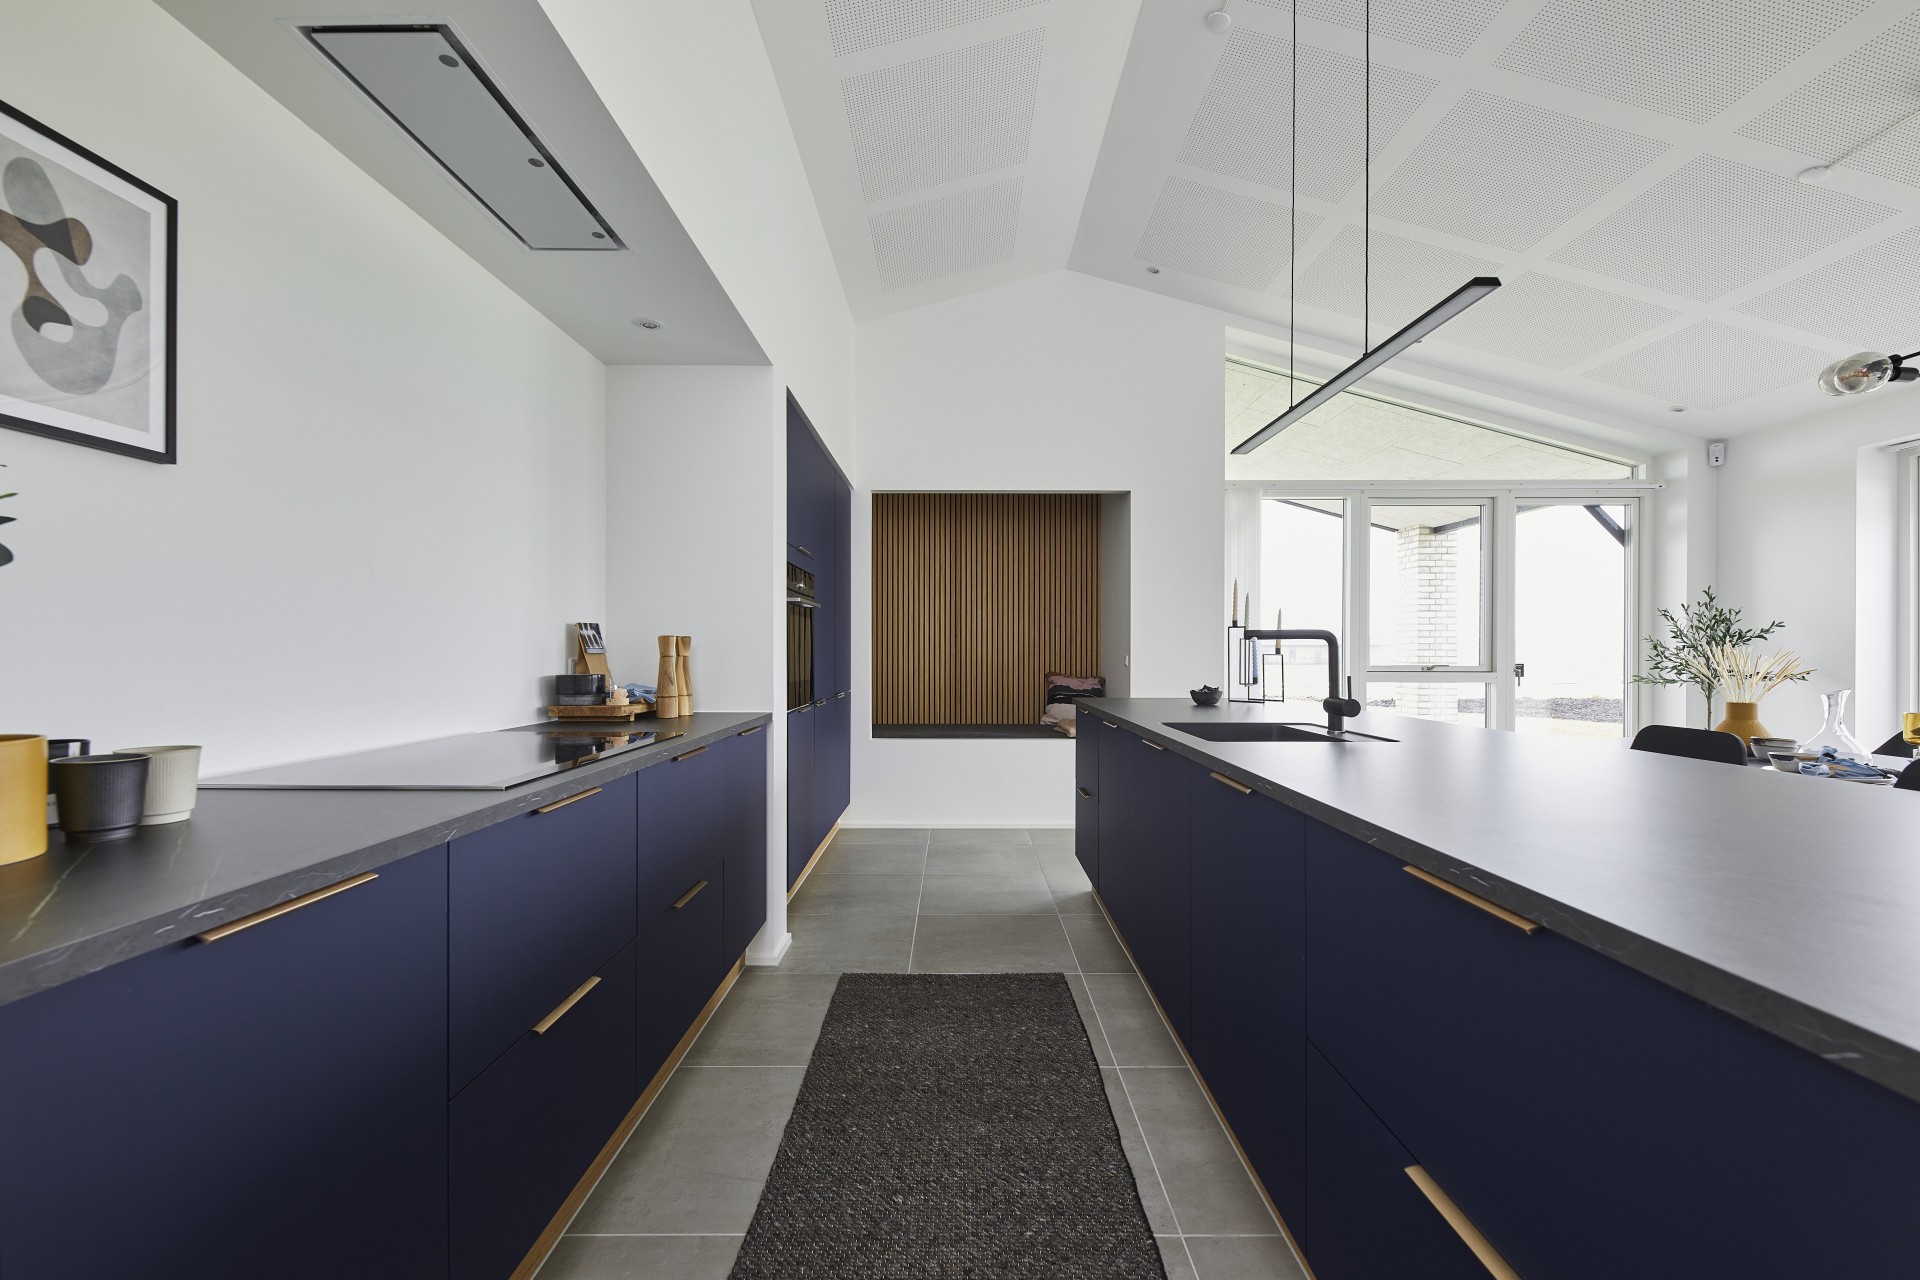 Inspiration til farver i hjemmet: Midnatsblå køkken og alkove med trælameller.